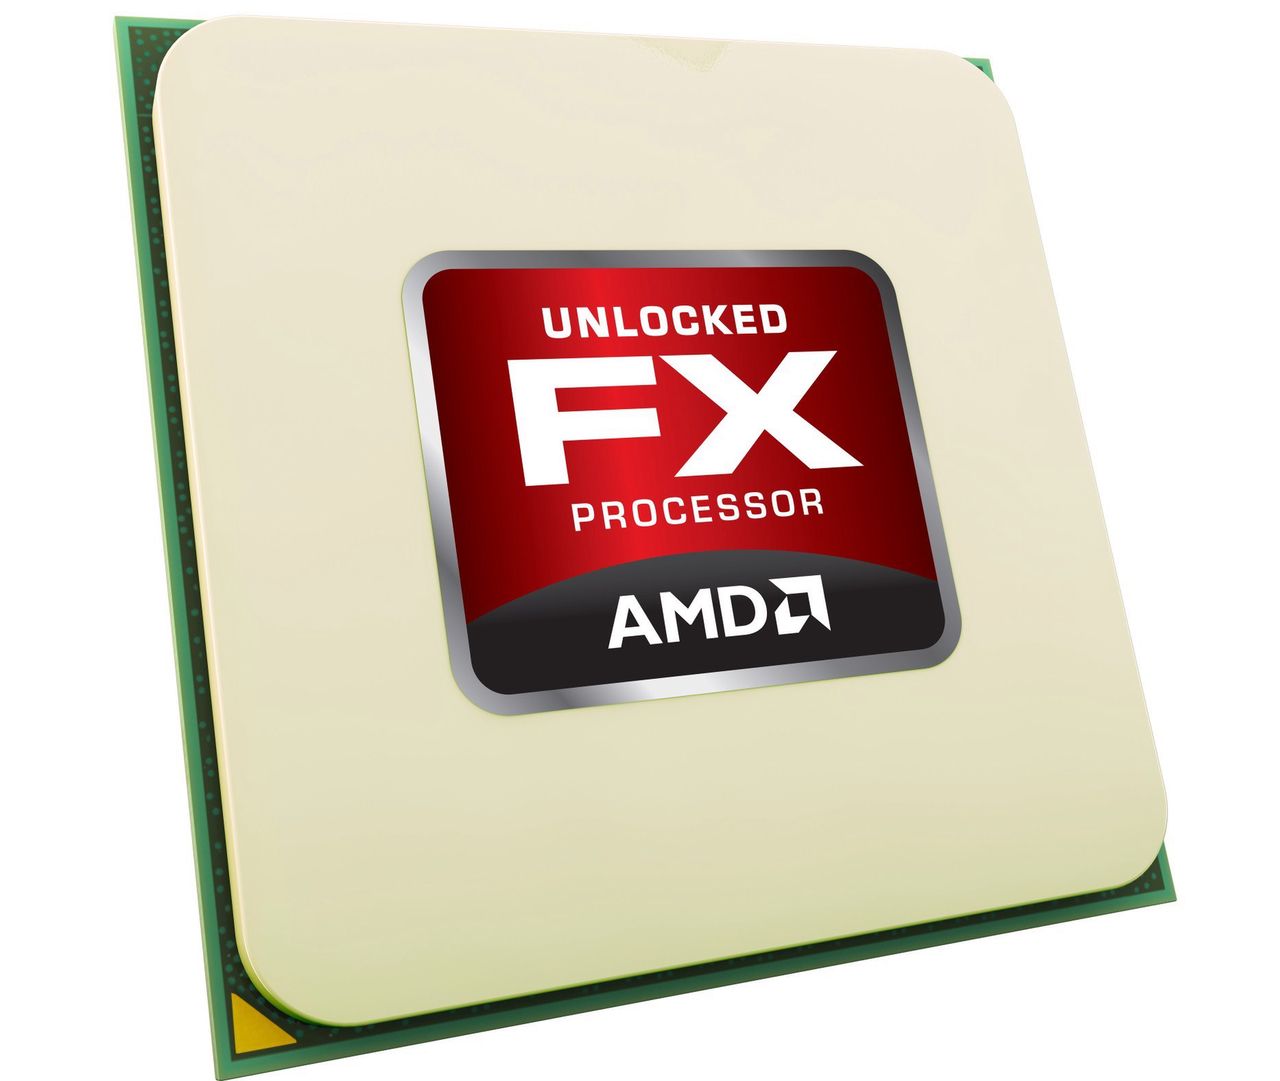 AMD FX-8350 i spółka - tanie i wydajne. Core i5 w defensywie!